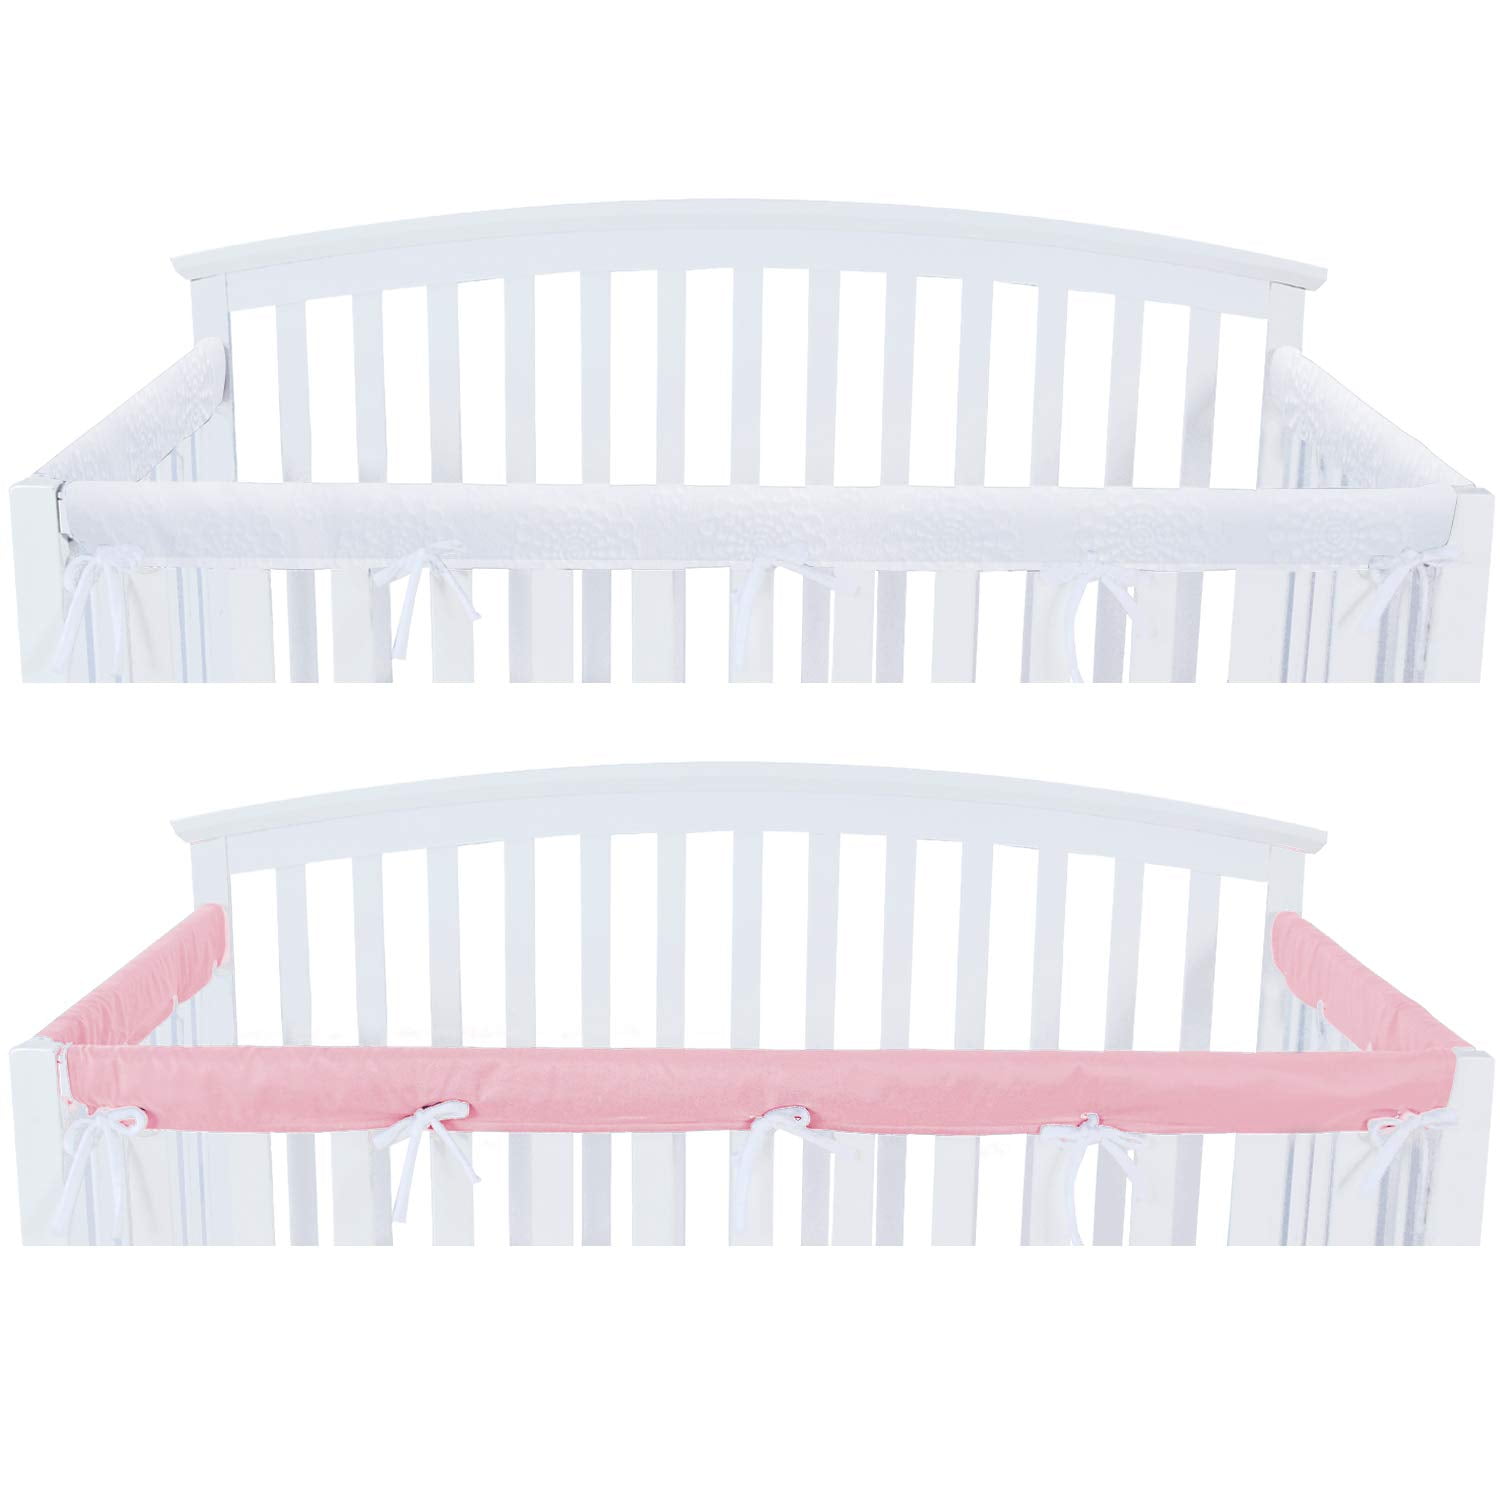 Cot Rail Cover Crib Teething Pad Pink Chevron  x 1 